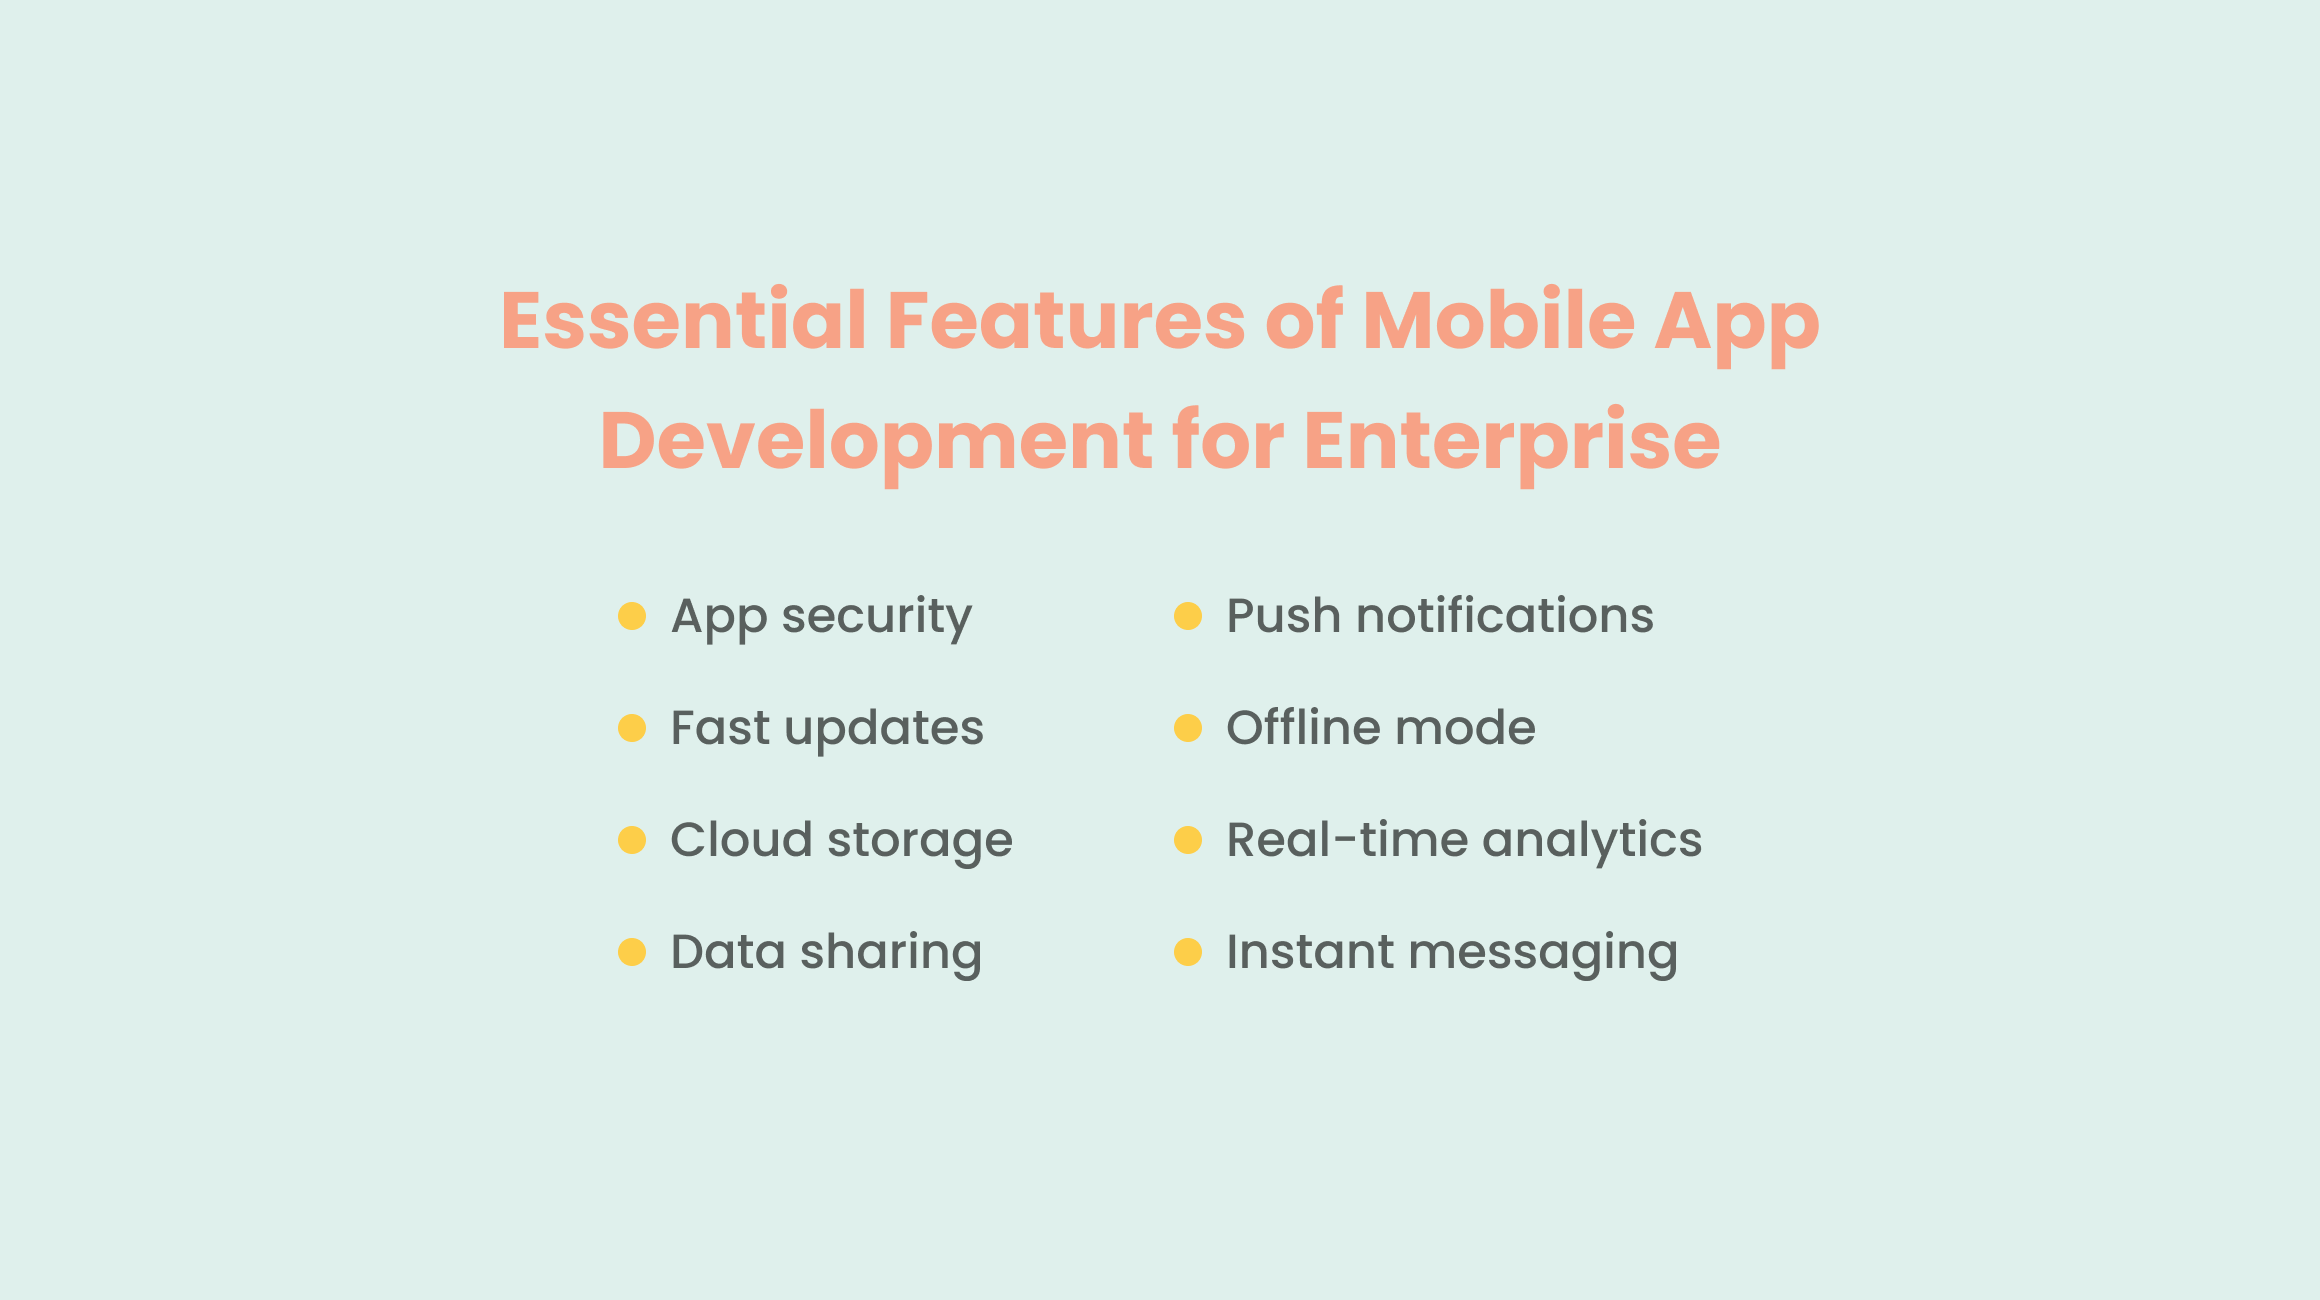 Enterprise Mobile App Features